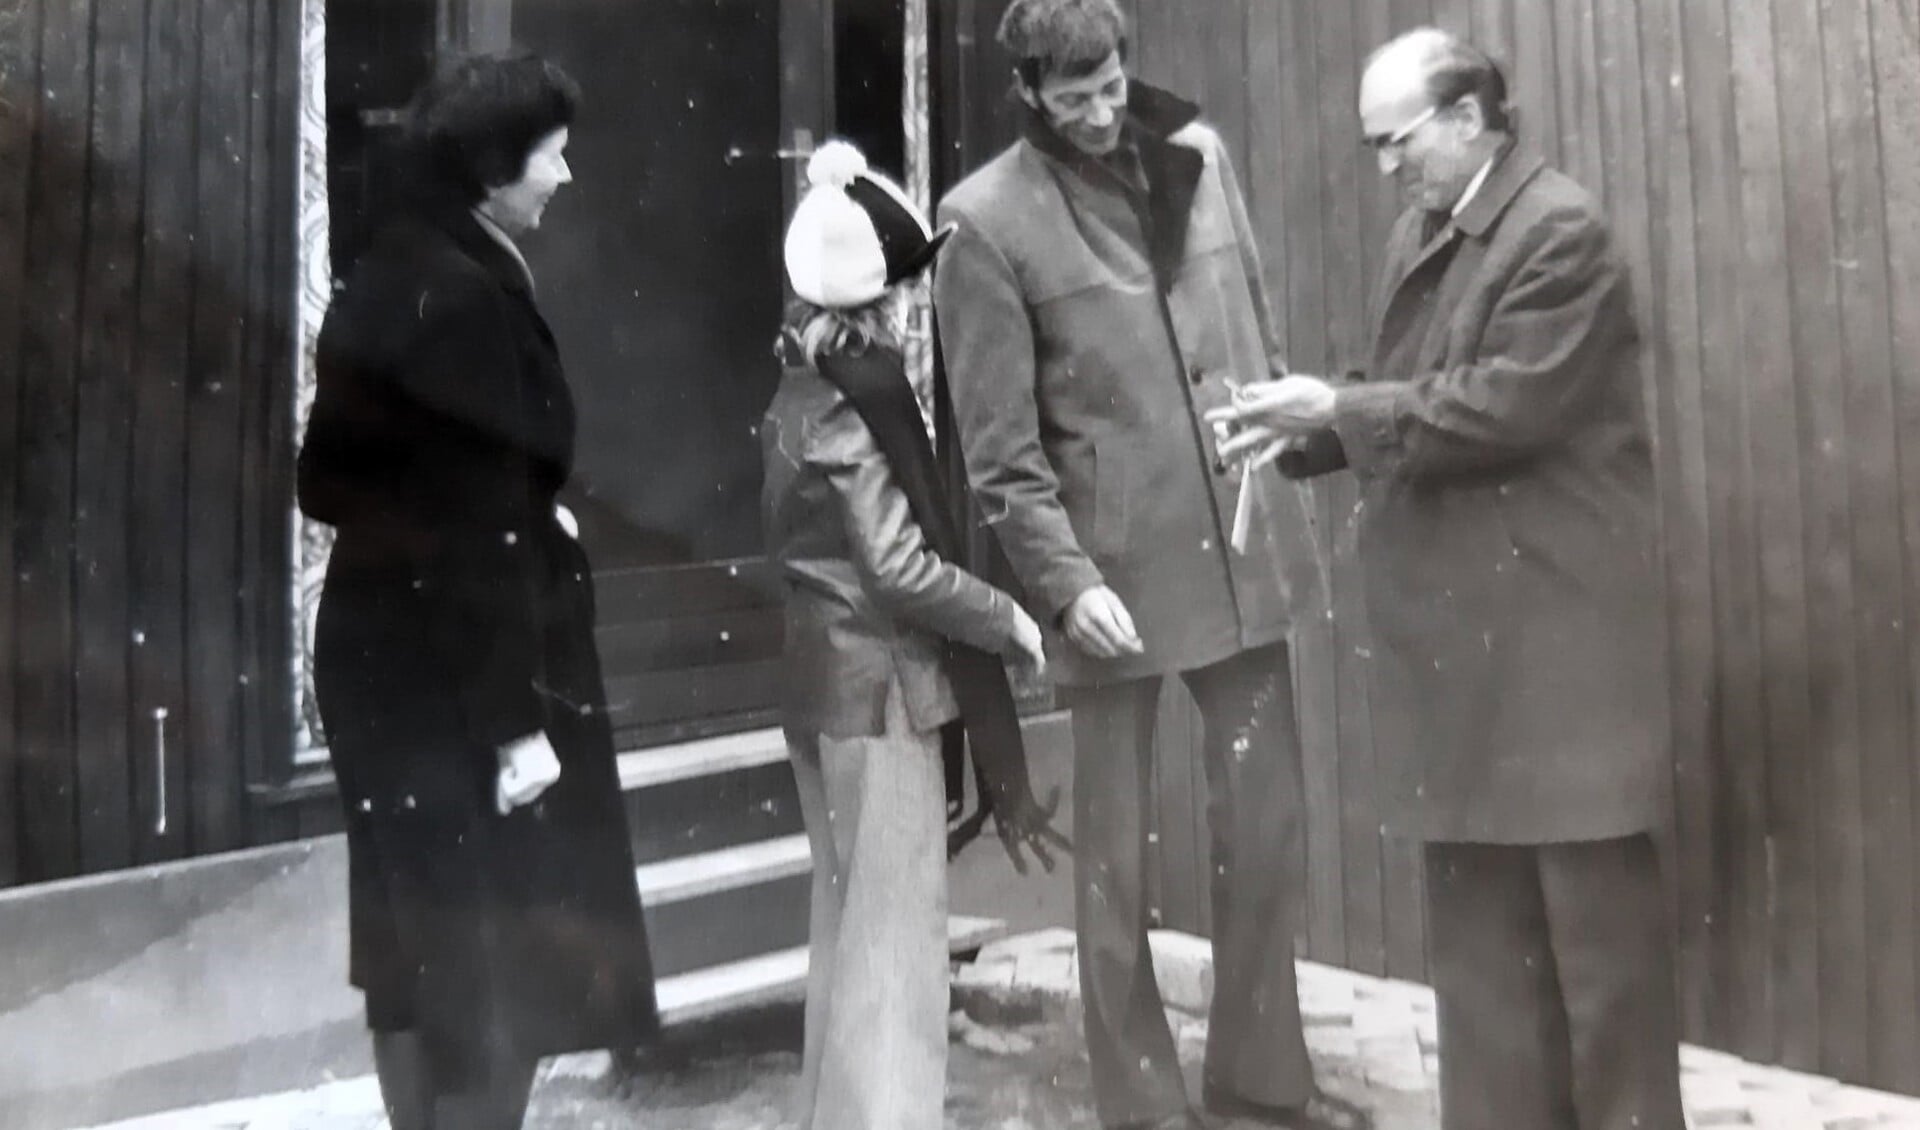 Landdrost Otto reikt op 1 december 1975 de sleutels uit aan de familie Van den Bos; Aukje mocht de deur van Bivak nr. 6 openen (VDBos familiearchief)